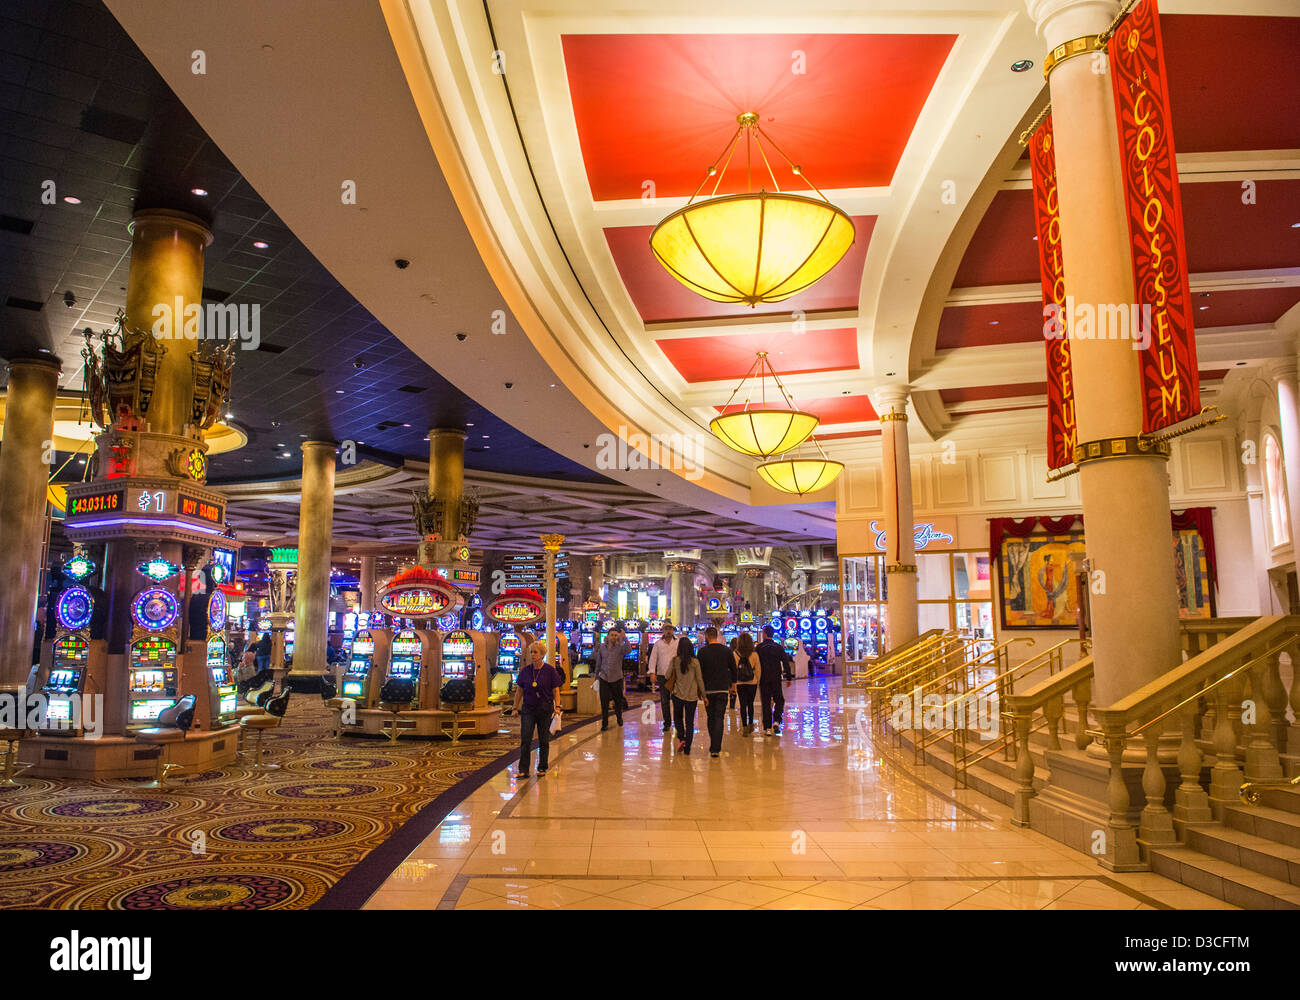 The Caesars Palace casino in Las Vegas Stock Photo - Alamy